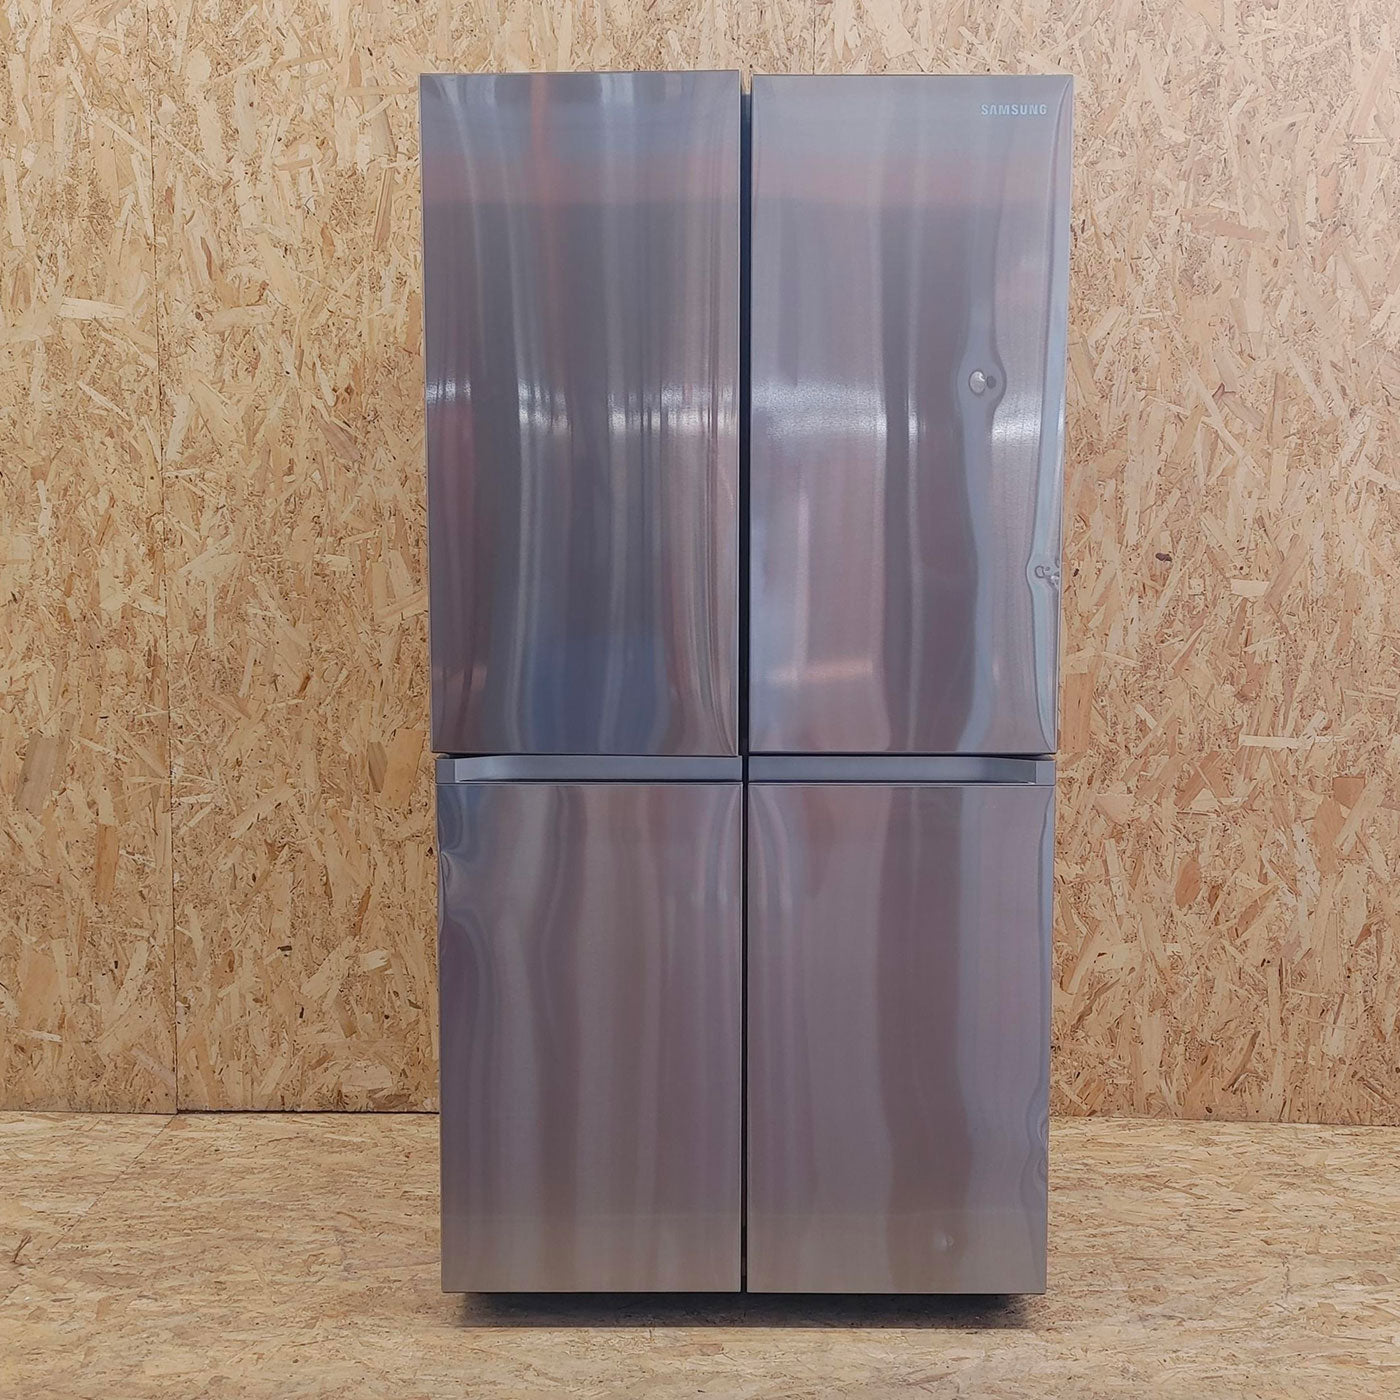 Samsung RF65A90TESR frigorifero side-by-side Libera installazione E, No Frost